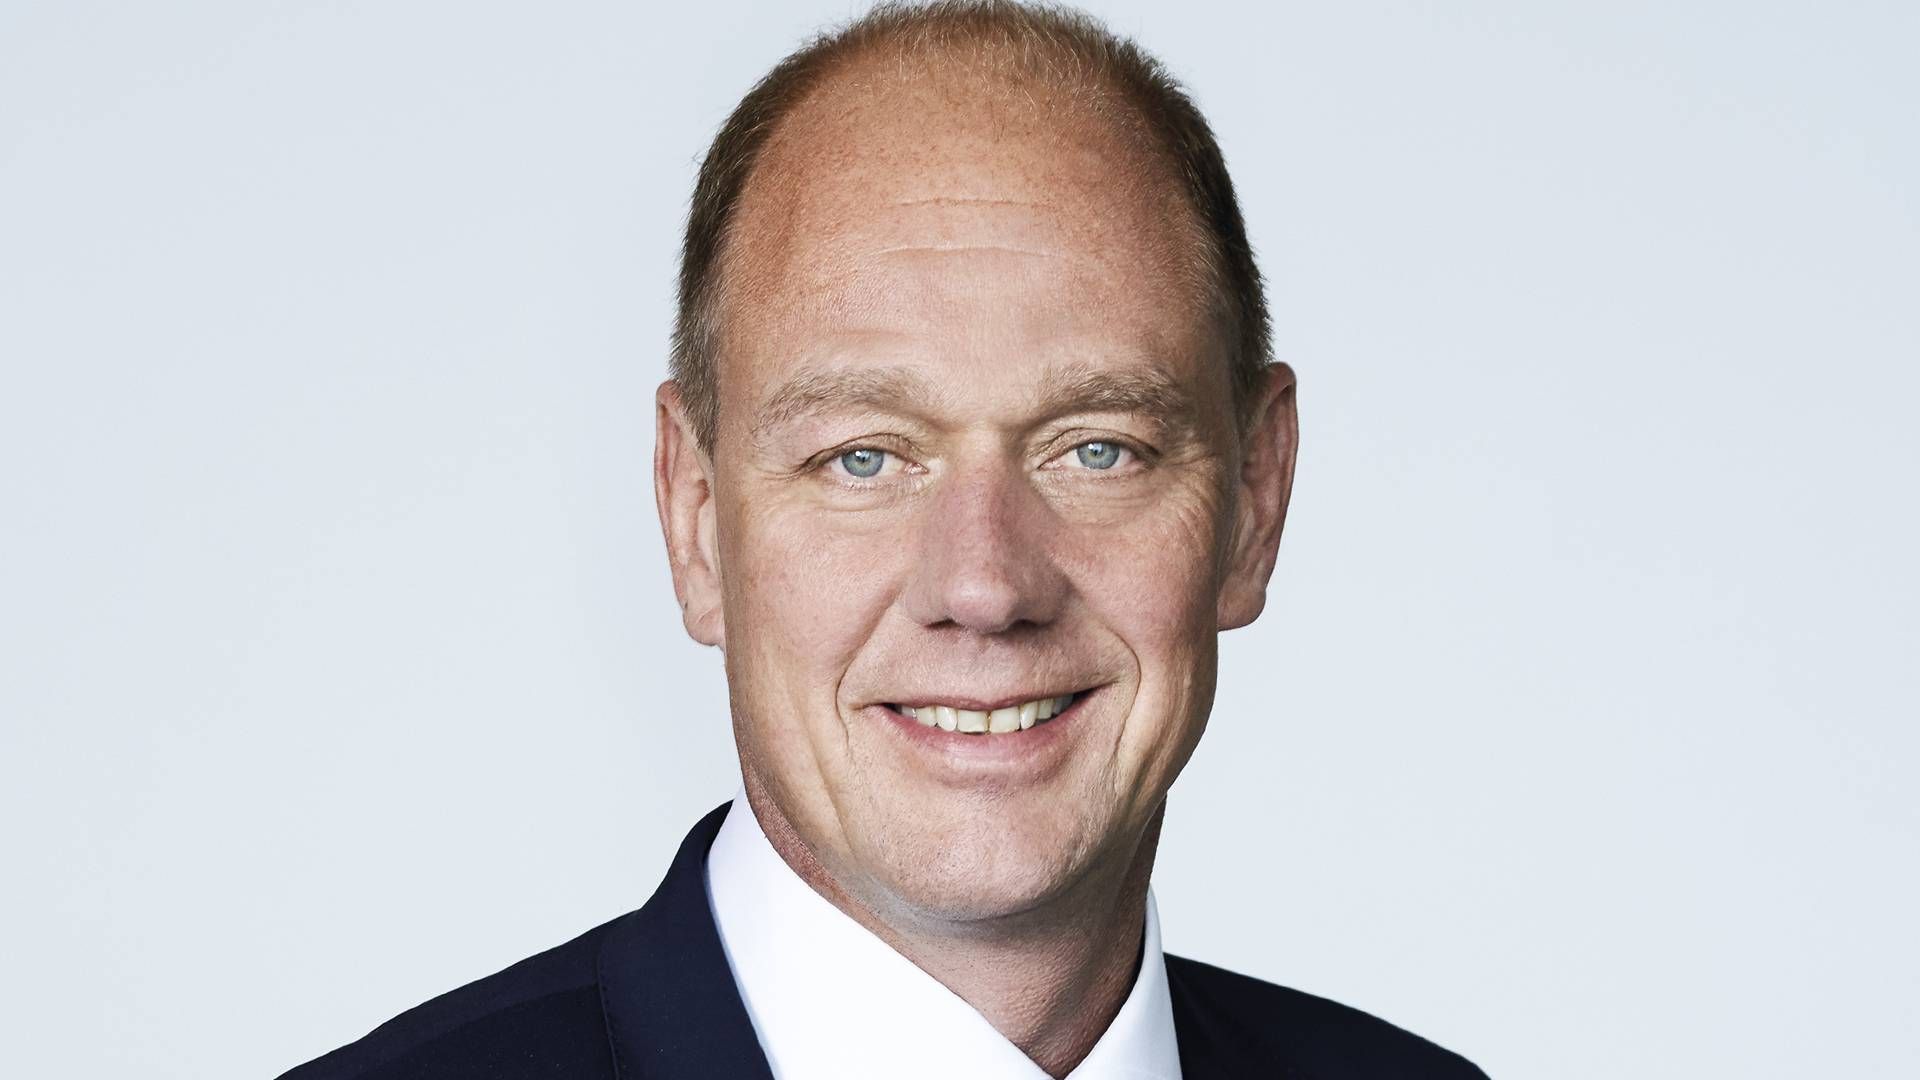 Lars Jespersen, der er administrerende direktør i SDK Shipping, siger til TV2, at hans virksomhed ikke indgår nye aftaler om omladning af russisk olie. | Foto: Lars Jespersen SDK Shipping